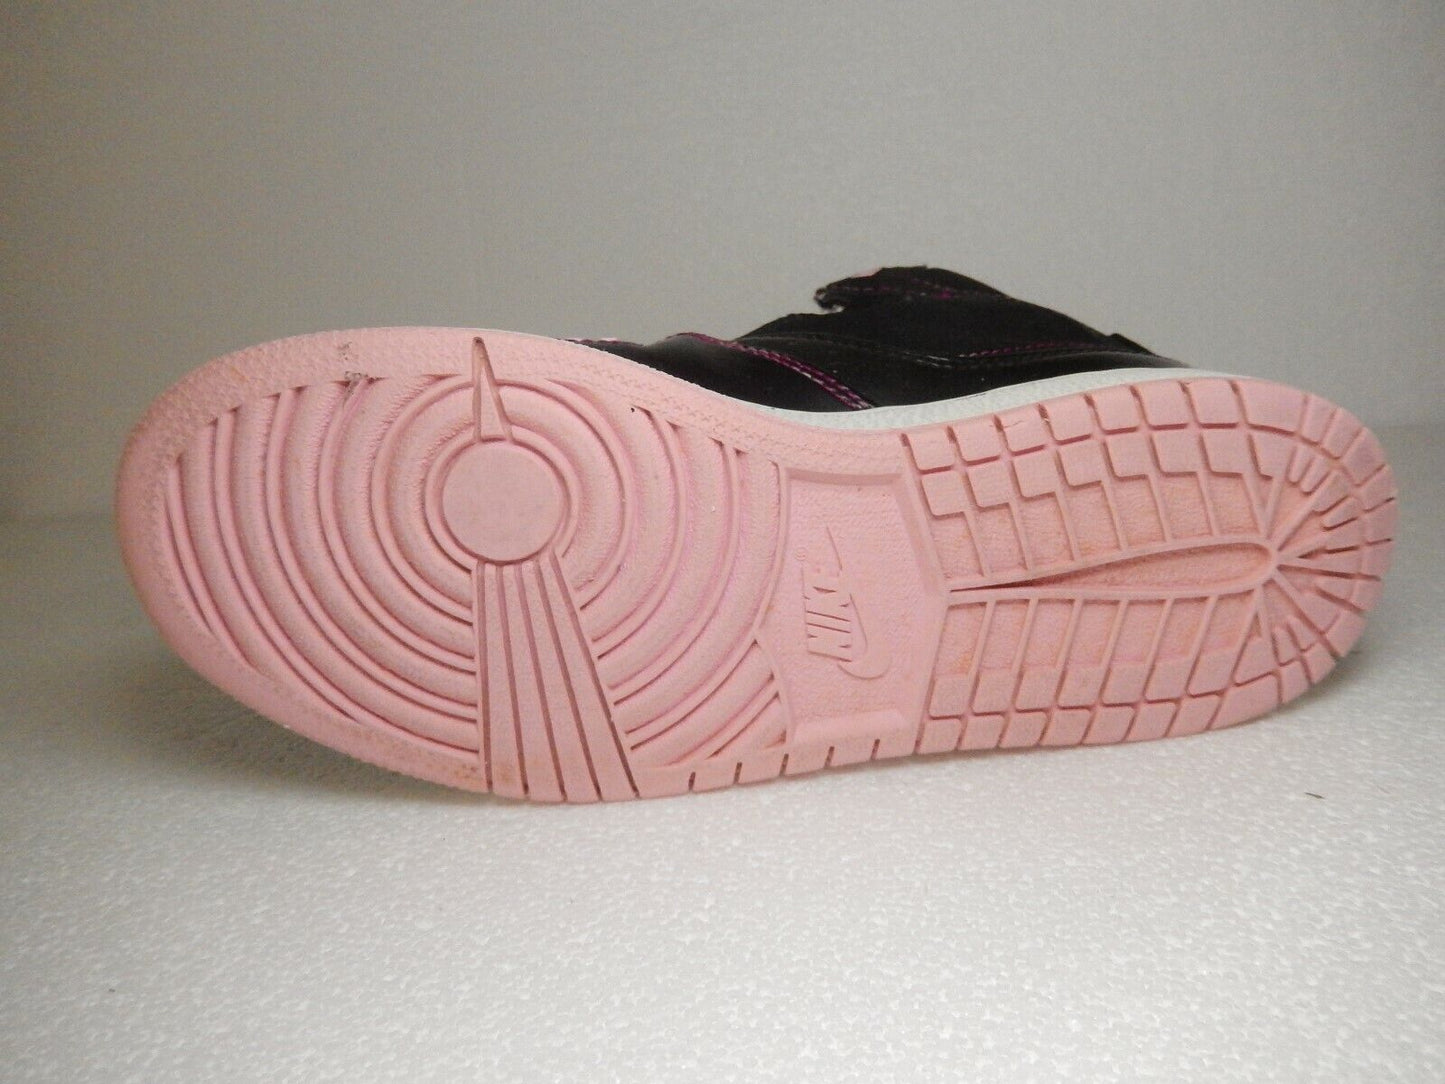 Nike Air Jordan 1 Flight Black White Pink Girls SIZE 3.5Y GS 371389 029